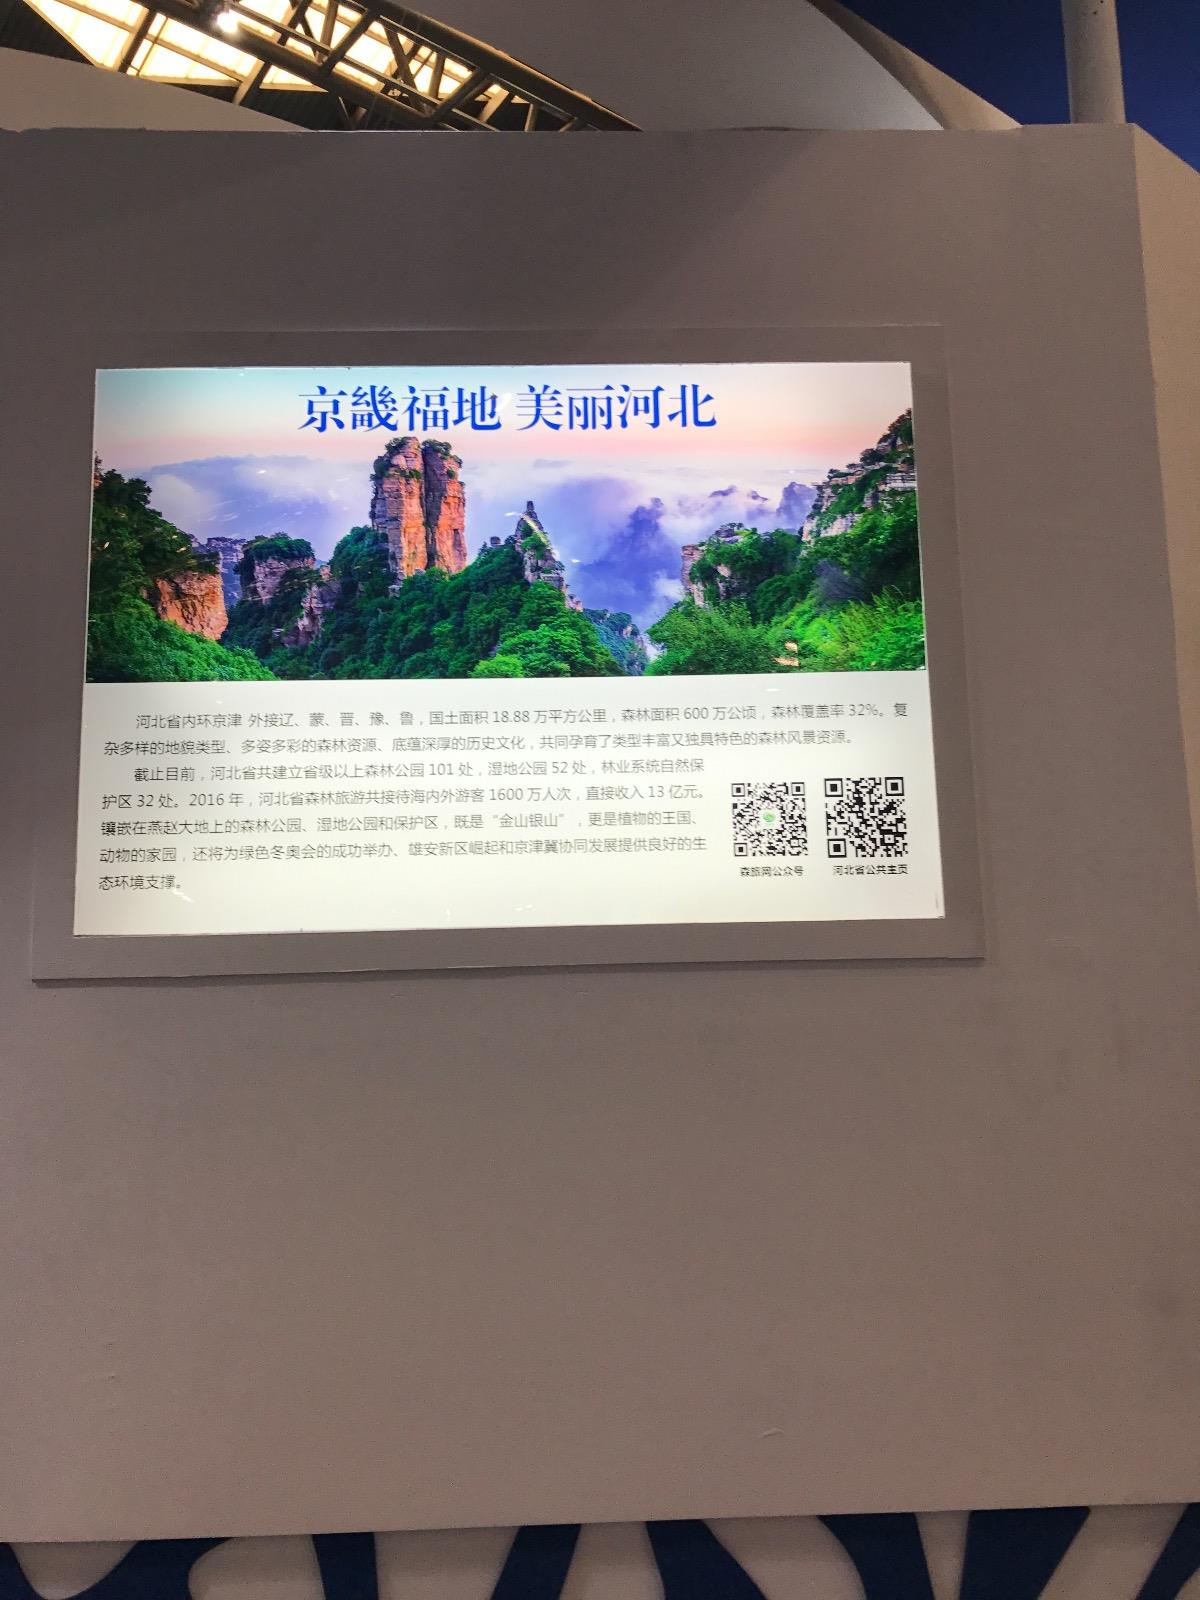 河北、黑龙江、山西、重庆等展厅，展板上印制了森林旅游网微信公众号和省厅公共主页的二维码，观展者可扫描二维码进行网上观展。